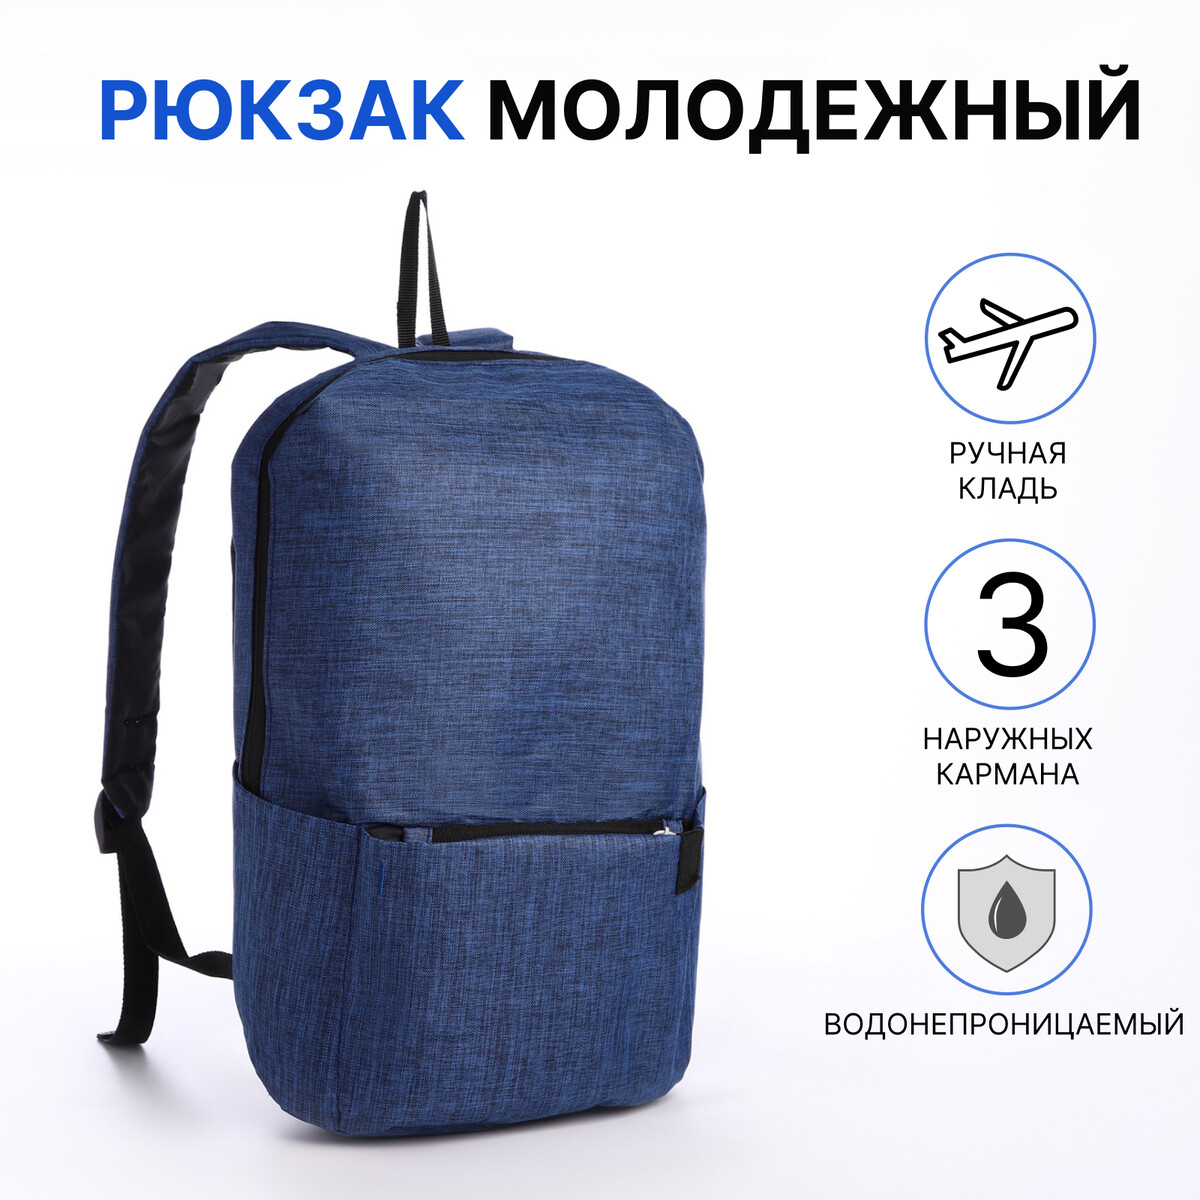 Рюкзак молодежный из текстиля на молнии, водонепроницаемый, наружный карман, цвет синий рюкзак молодежный из текстиля на молнии водонепроницаемый наружный карман бирюзовый